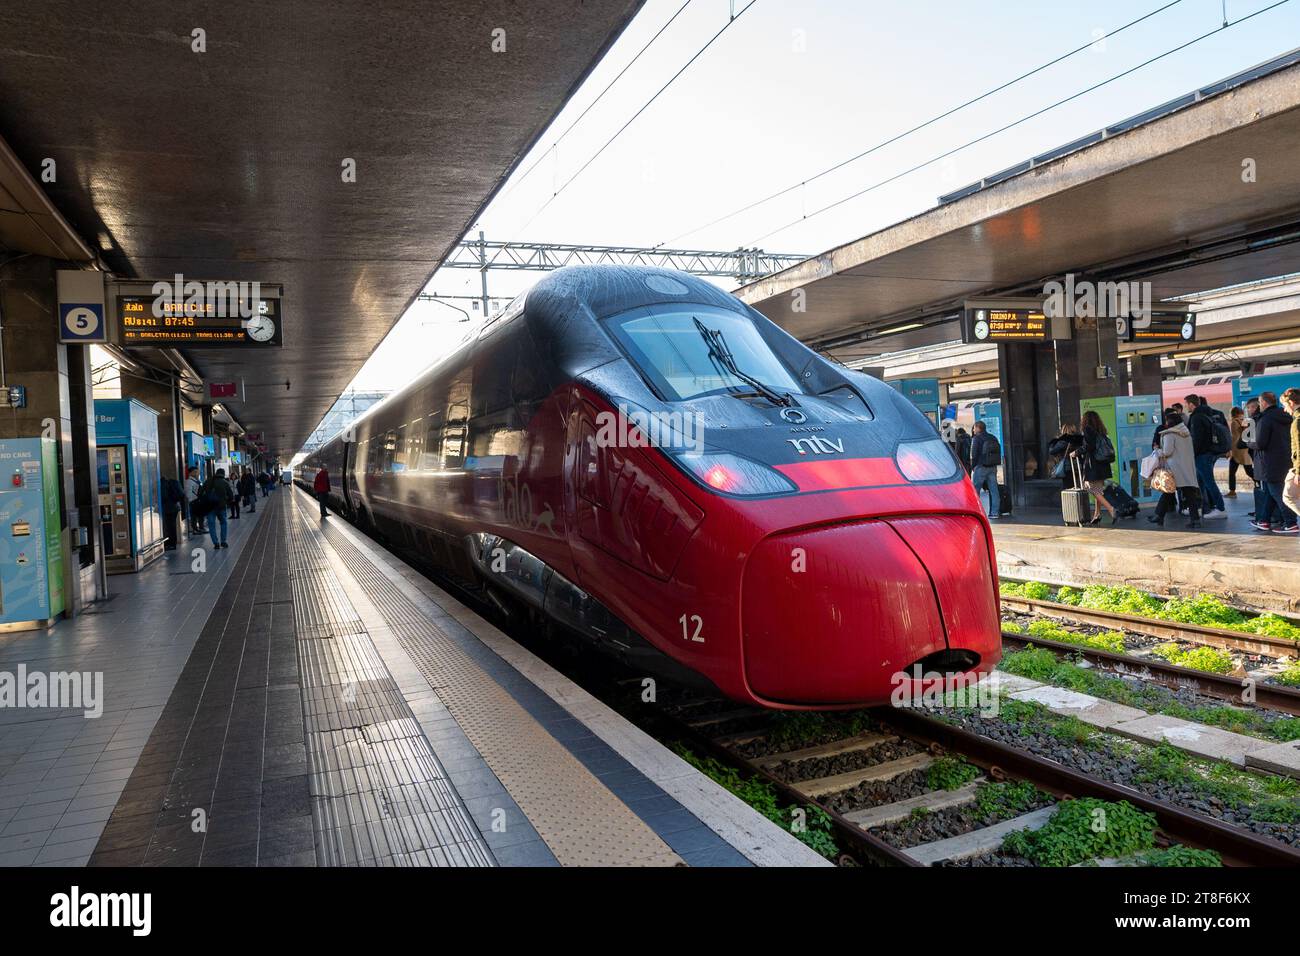 Roma, Italia: 13 novembre 2023: Treno ad alta velocità Italo alla stazione di Roma termini a Roma nel 2023 in Italia. Foto Stock